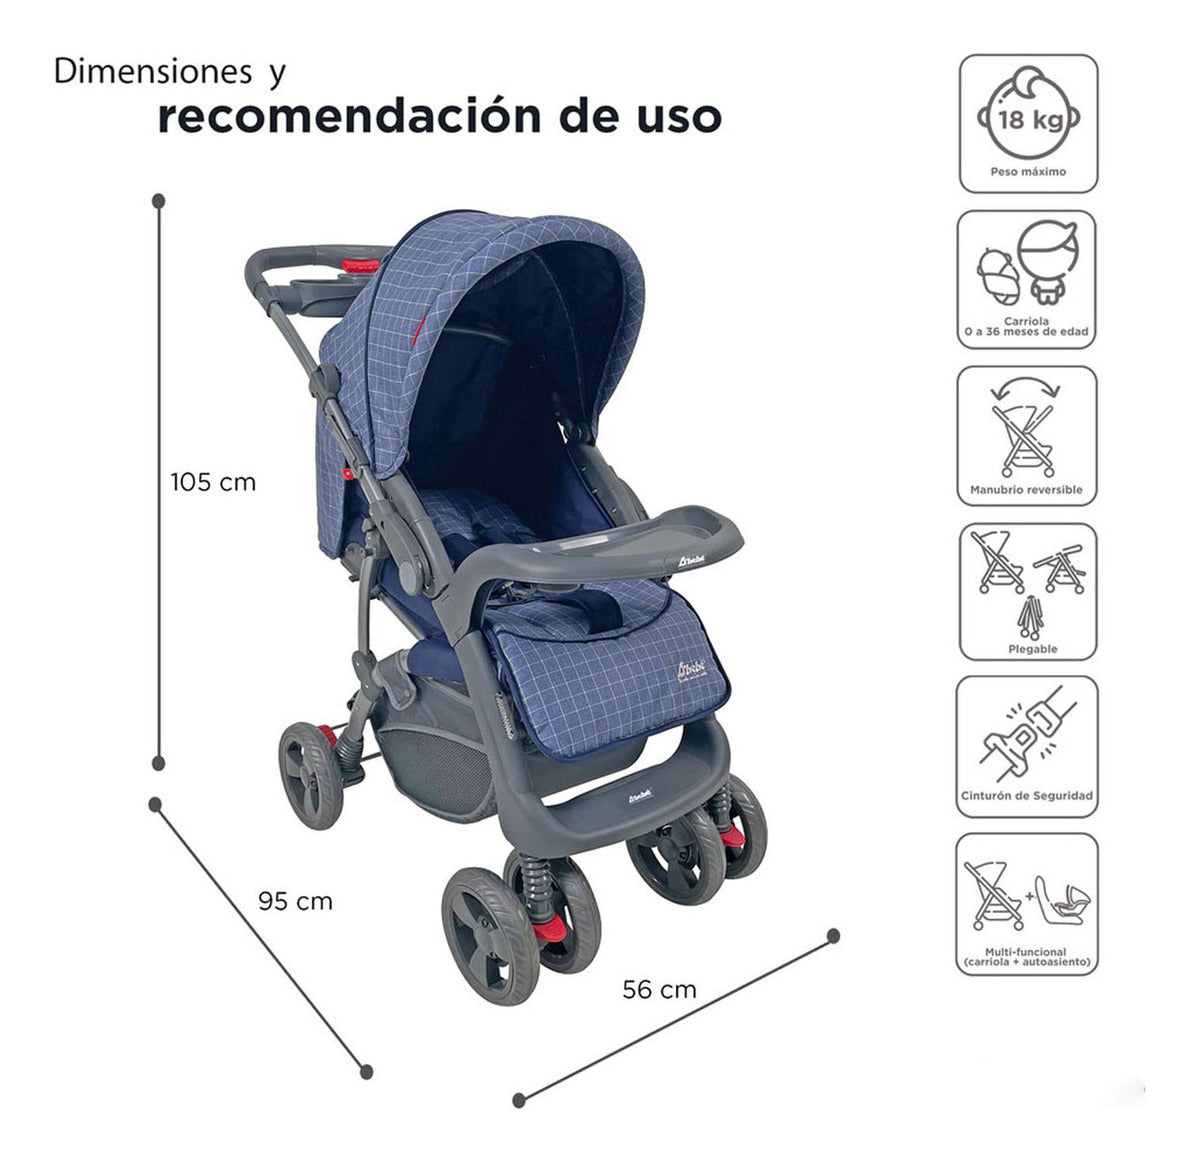 Set Carriola D'bebé Travel System Aventura de 0 a 36 meses